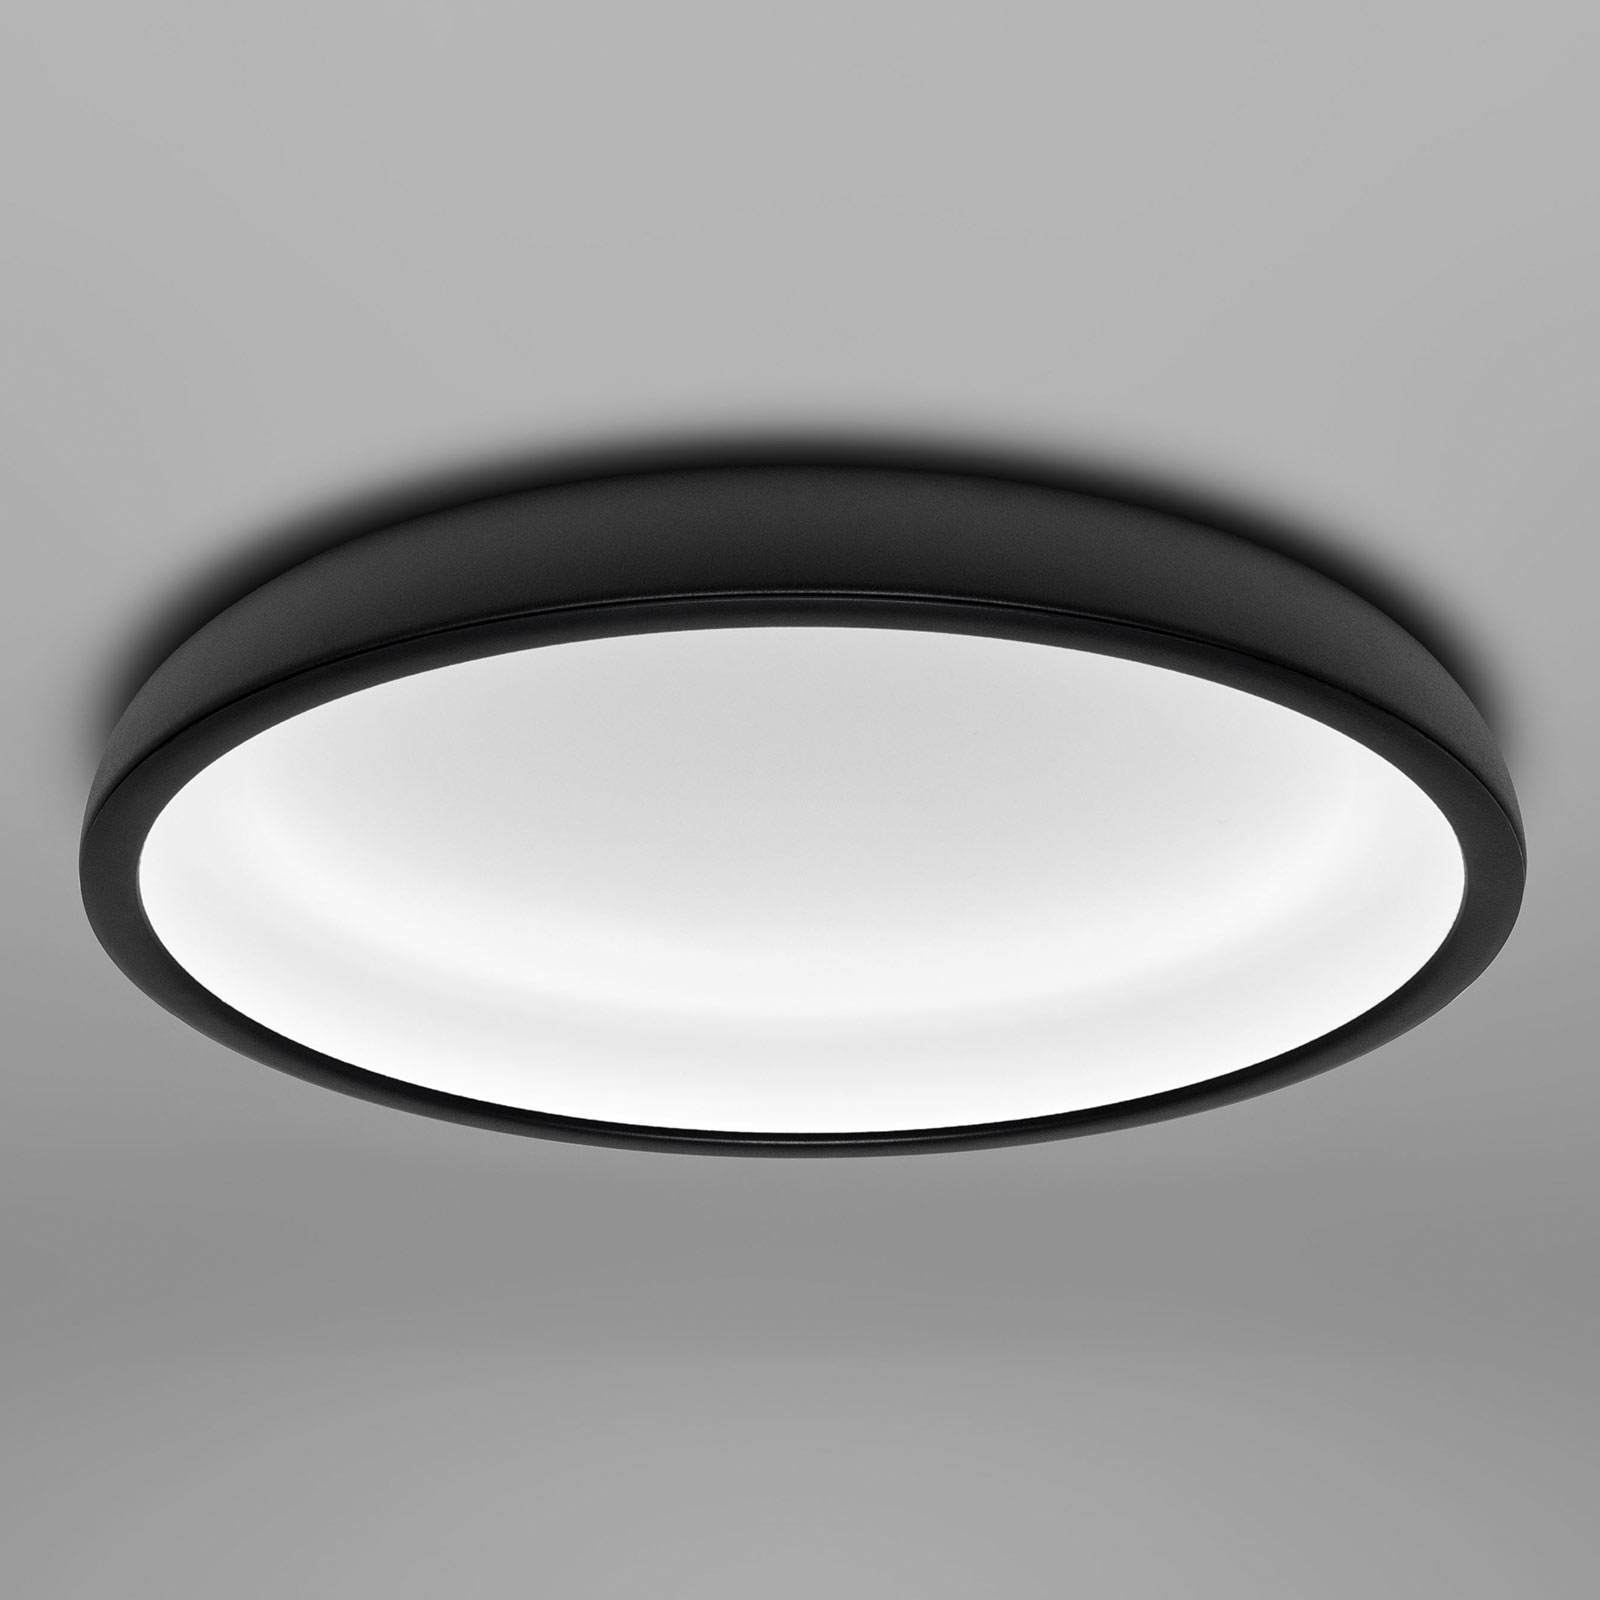 Φωτιστικό οροφής Reflexio LED, Ø 46cm, μαύρο